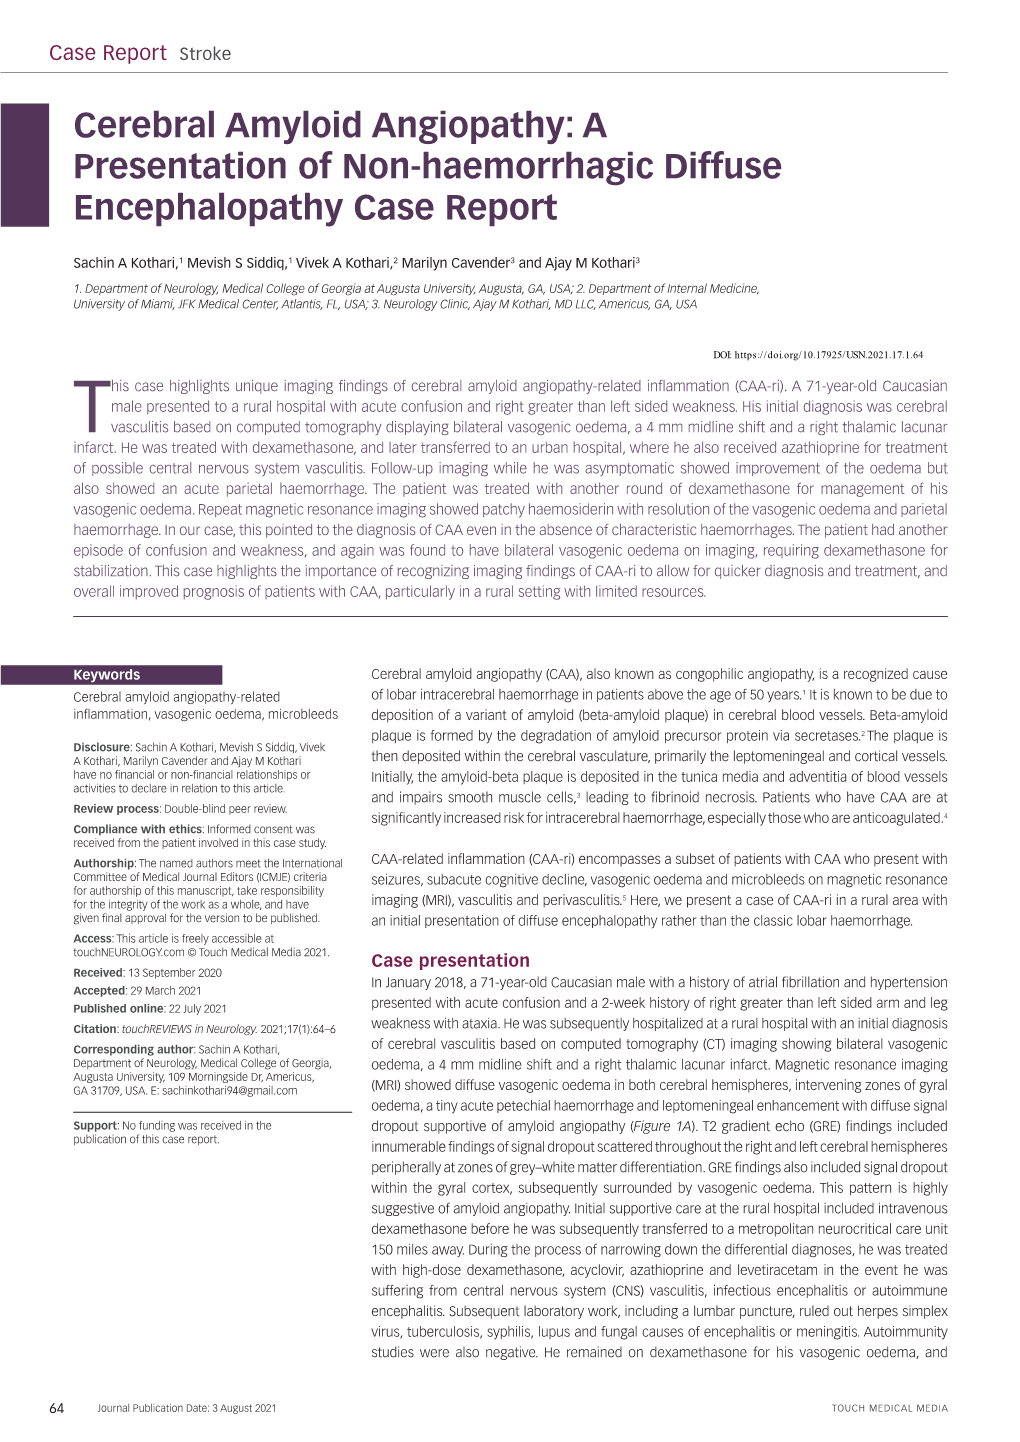 Cerebral Amyloid Angiopathy: a Presentation of Non-Haemorrhagic Diffuse Encephalopathy Case Report